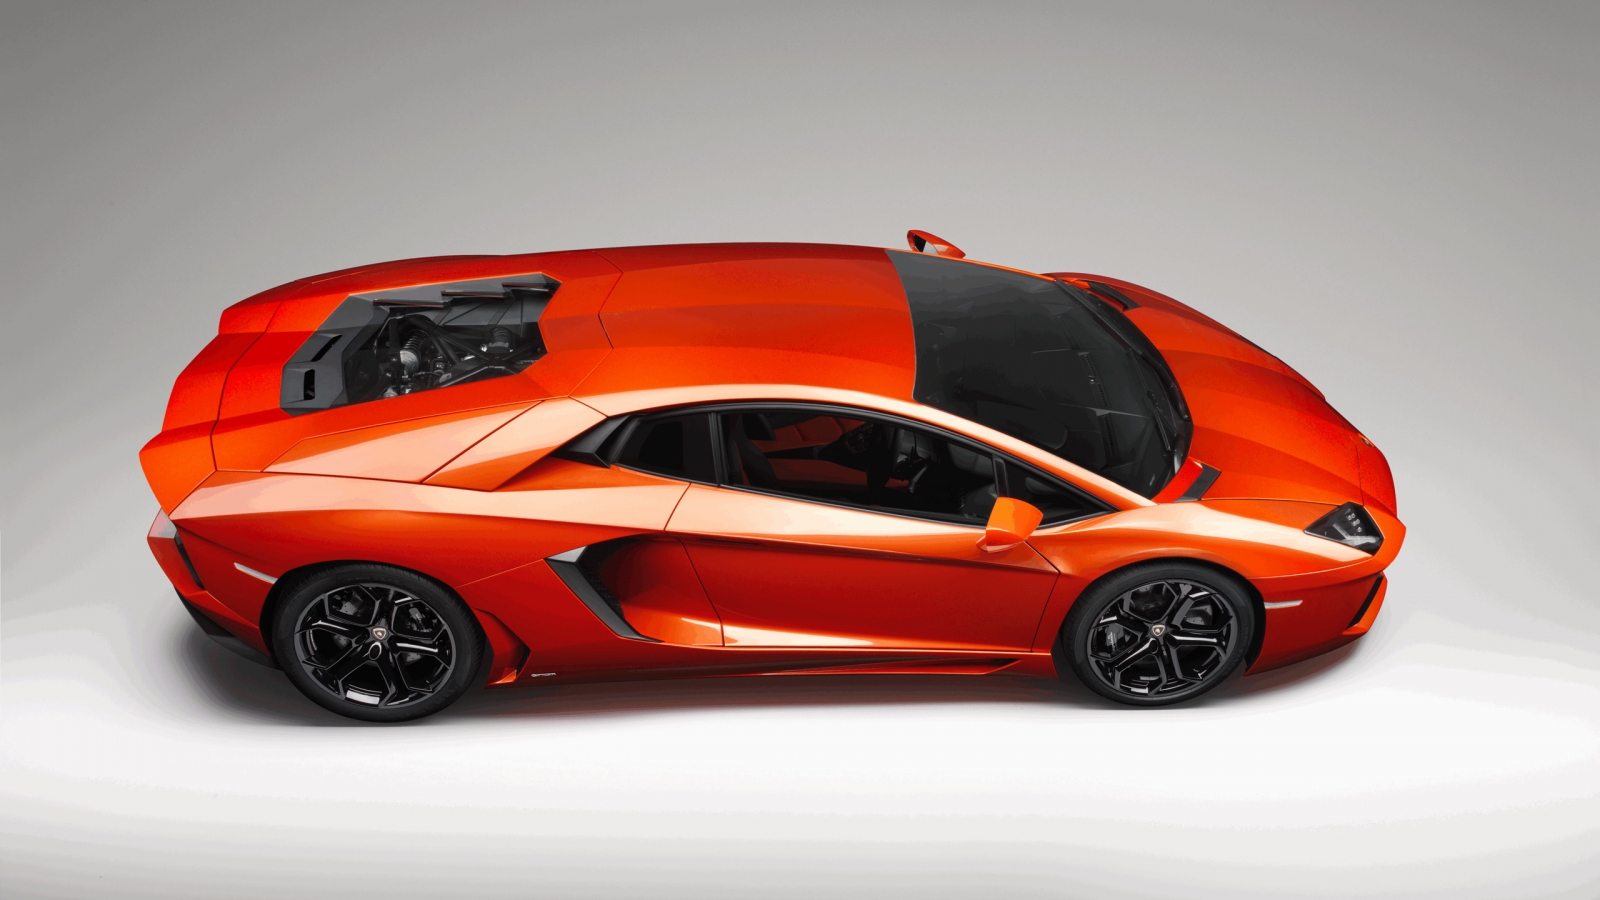 Lamborghini Aventador Studio for 1600 x 900 HDTV resolution